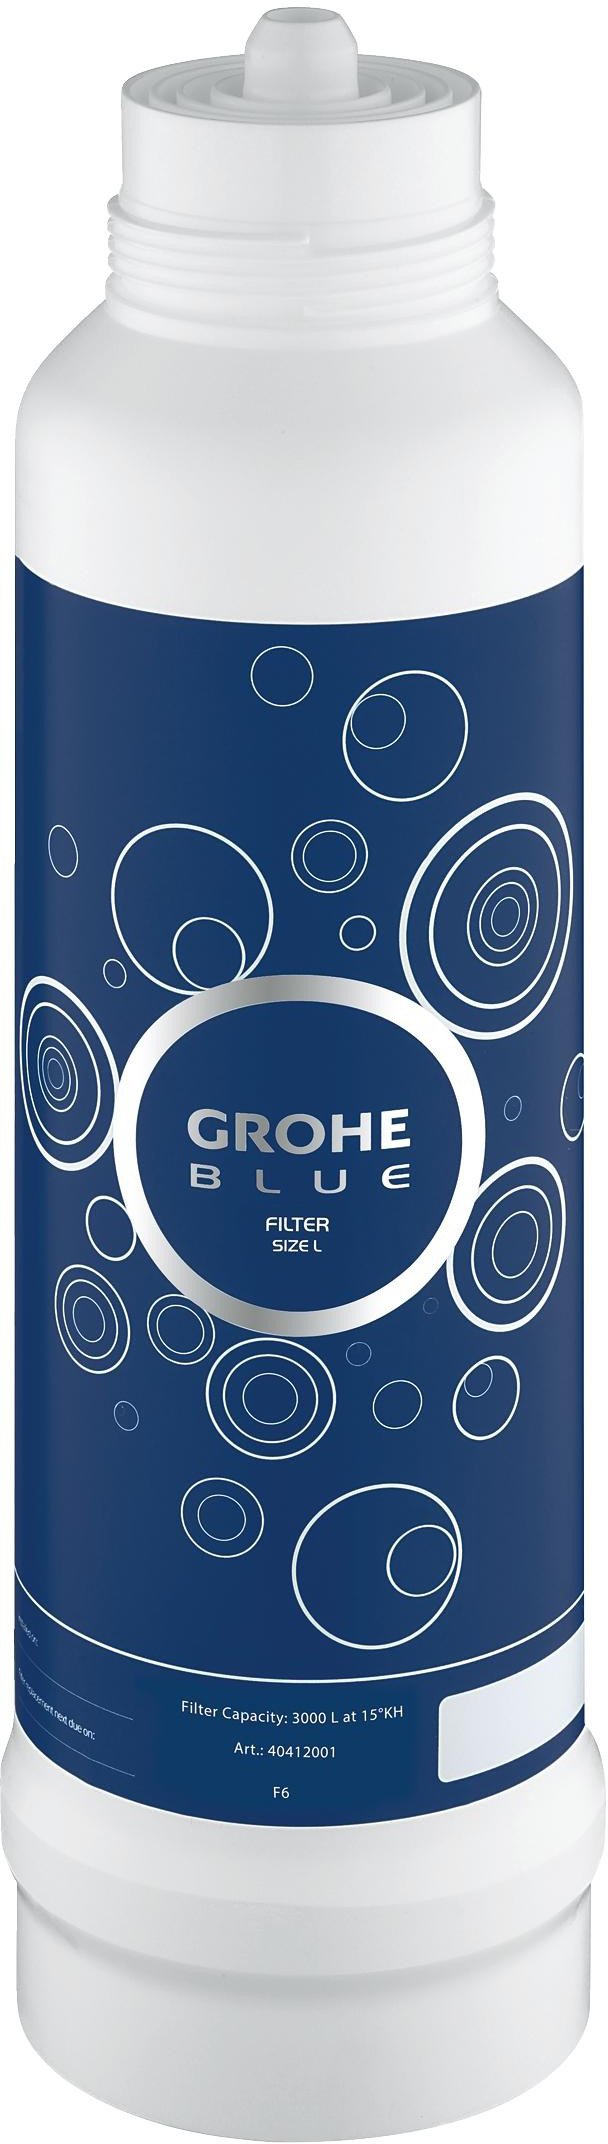 Сменный фильтр Grohe GROHE Blue 40412001